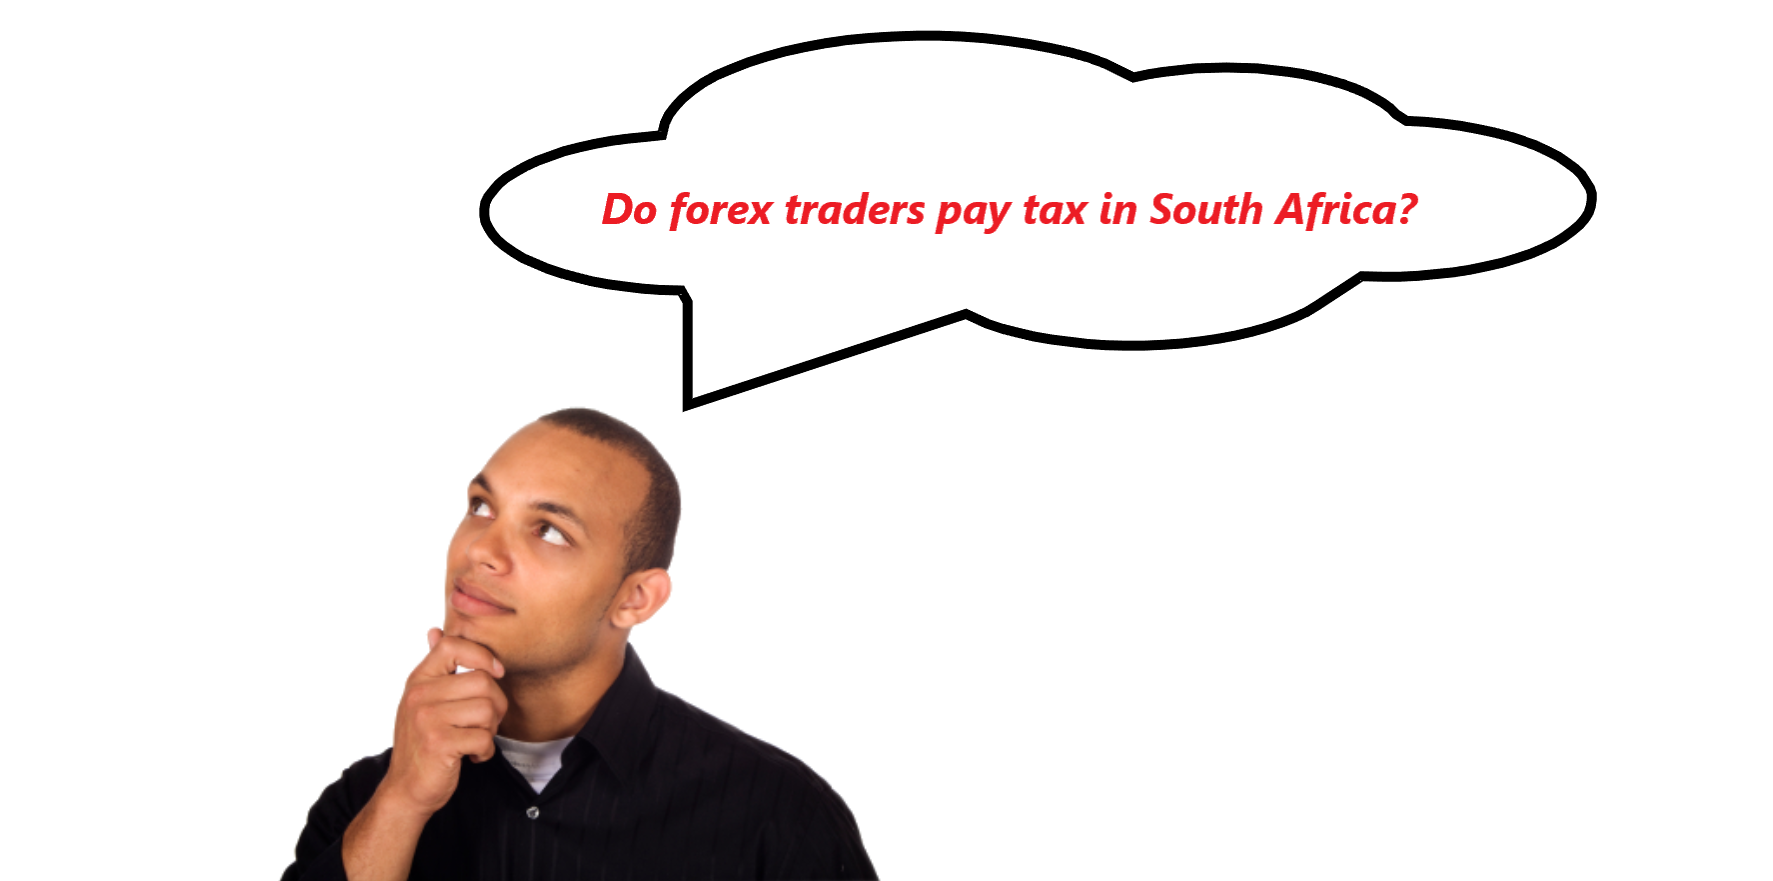 क्या दक्षिण अफ्रीका में विदेशी मुद्रा व्यापारियों को कर देना पड़ता है? 